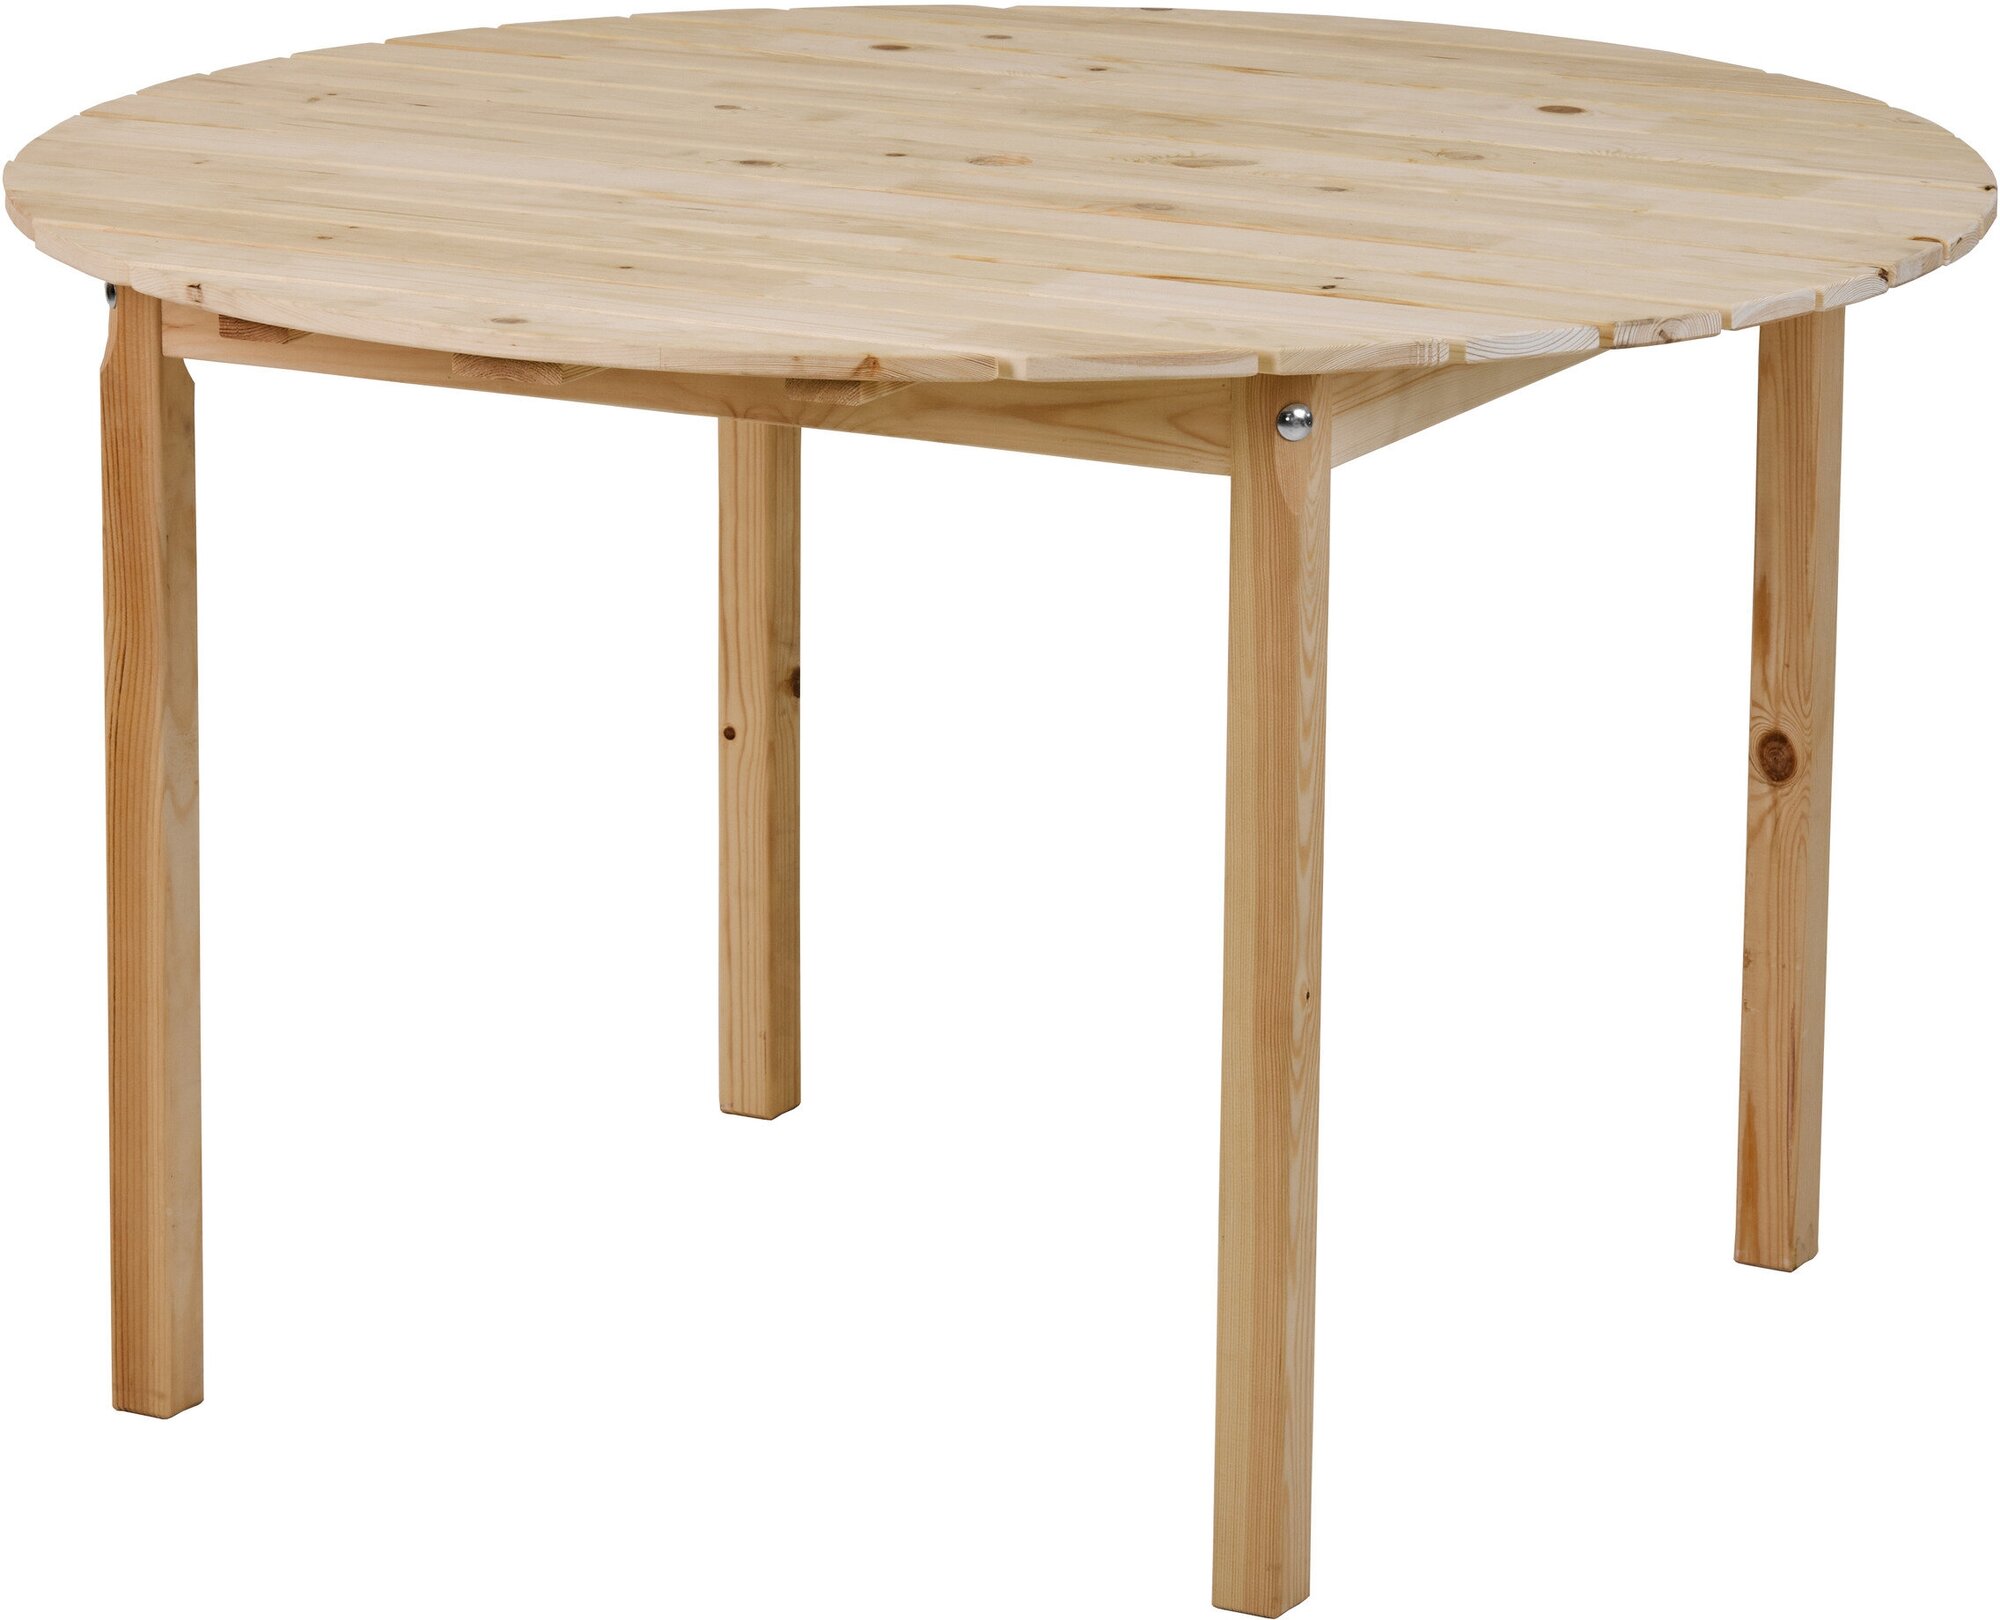 Садовый деревянный круглый обеденный стол, 120*120см, Кингстон - фотография № 1